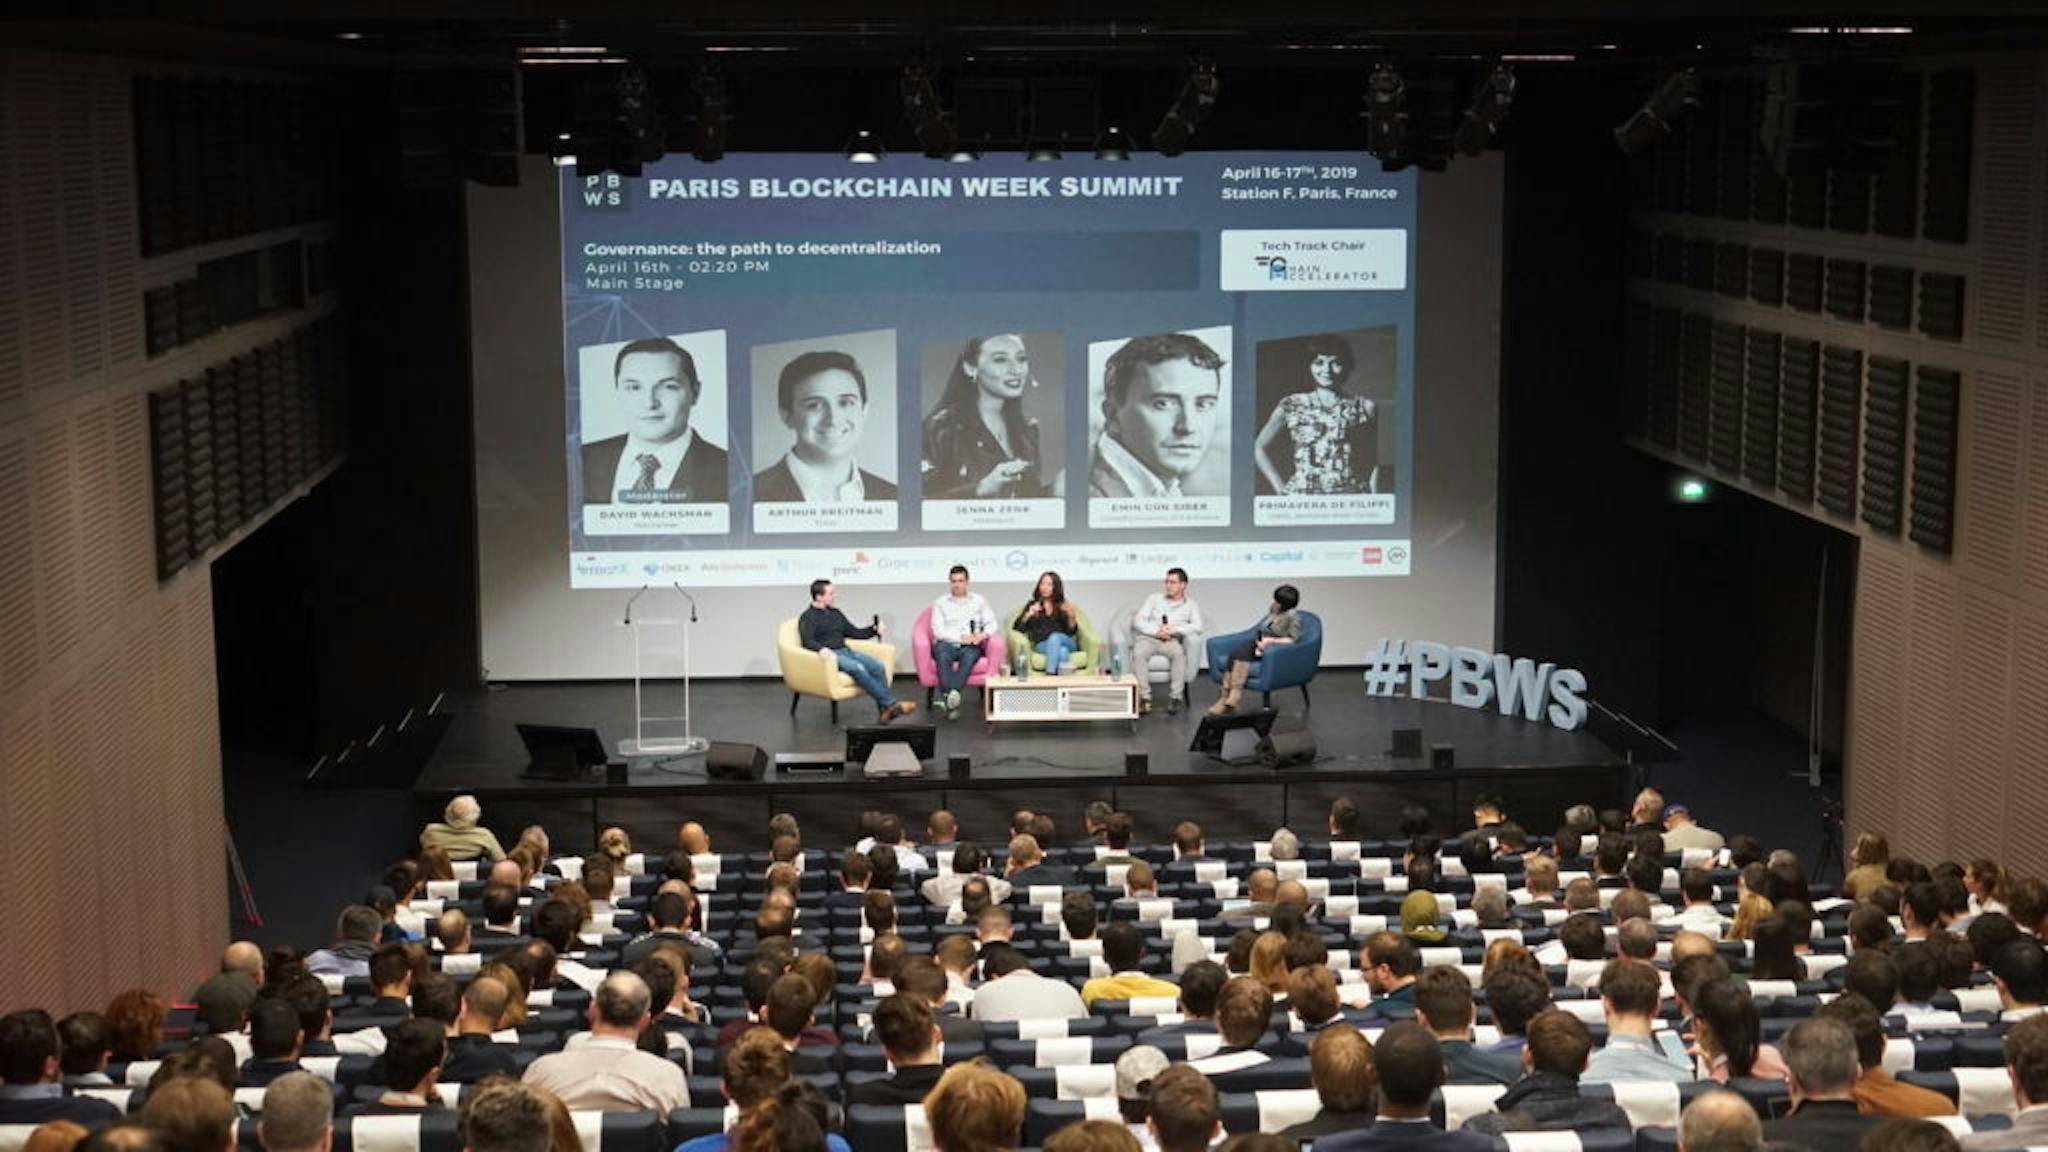 Paris Blockchain Week Summit in Paris